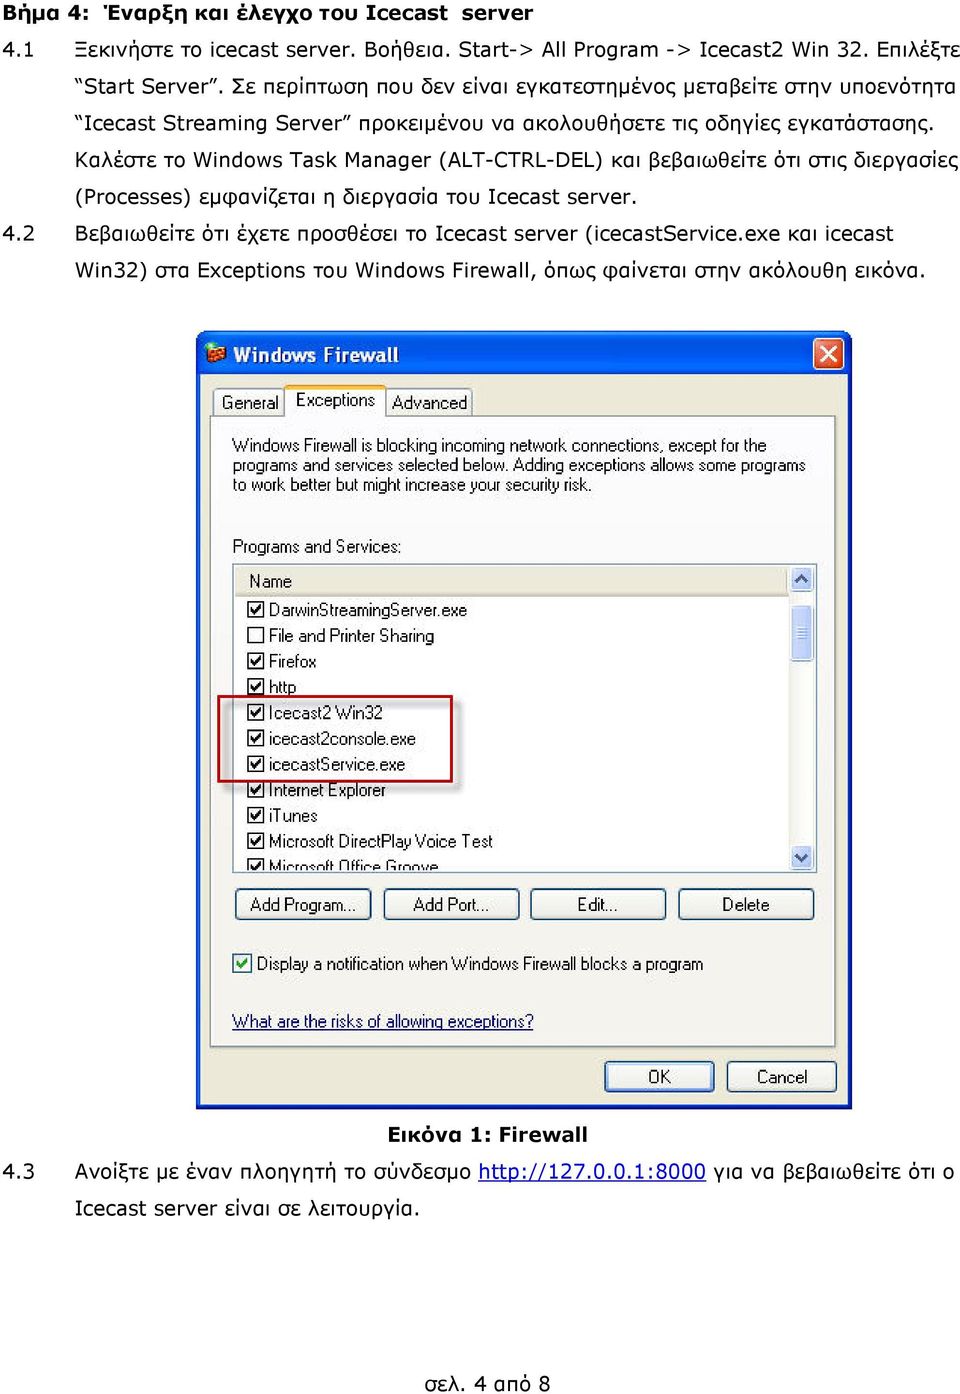 Καλέστε το Windows Task Manager (ALT-CTRL-DEL) και βεβαιωθείτε ότι στις διεργασίες (Processes) εµφανίζεται η διεργασία του Icecast server. 4.